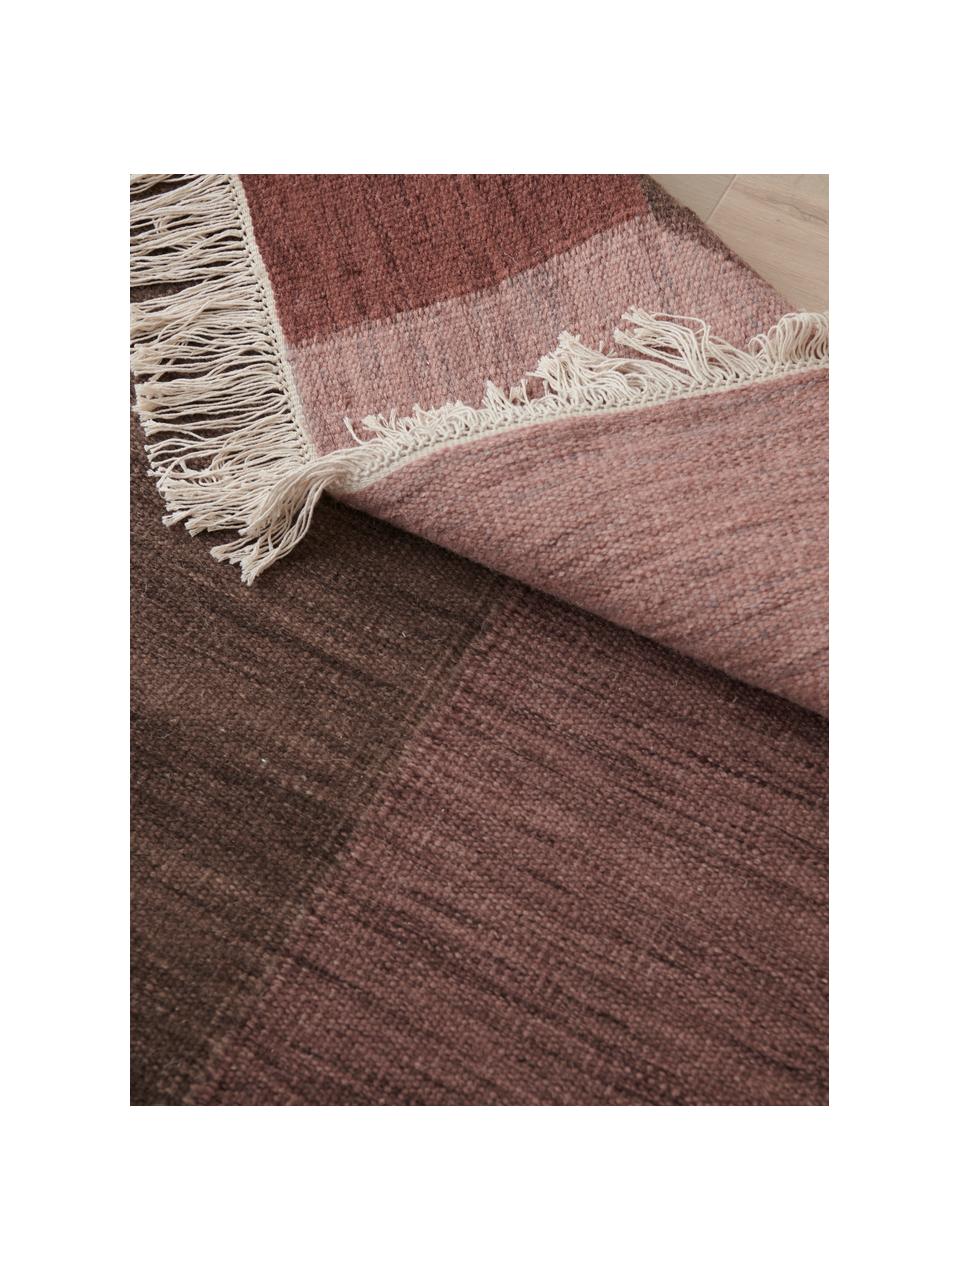 Alfombra artesanal de lana con flecos Olbia, 100% lana

Las alfombras de lana se pueden aflojar durante las primeras semanas de uso, la pelusa se reduce con el uso diario, Multicolor, An 140 x L 200 cm (Tamaño S)